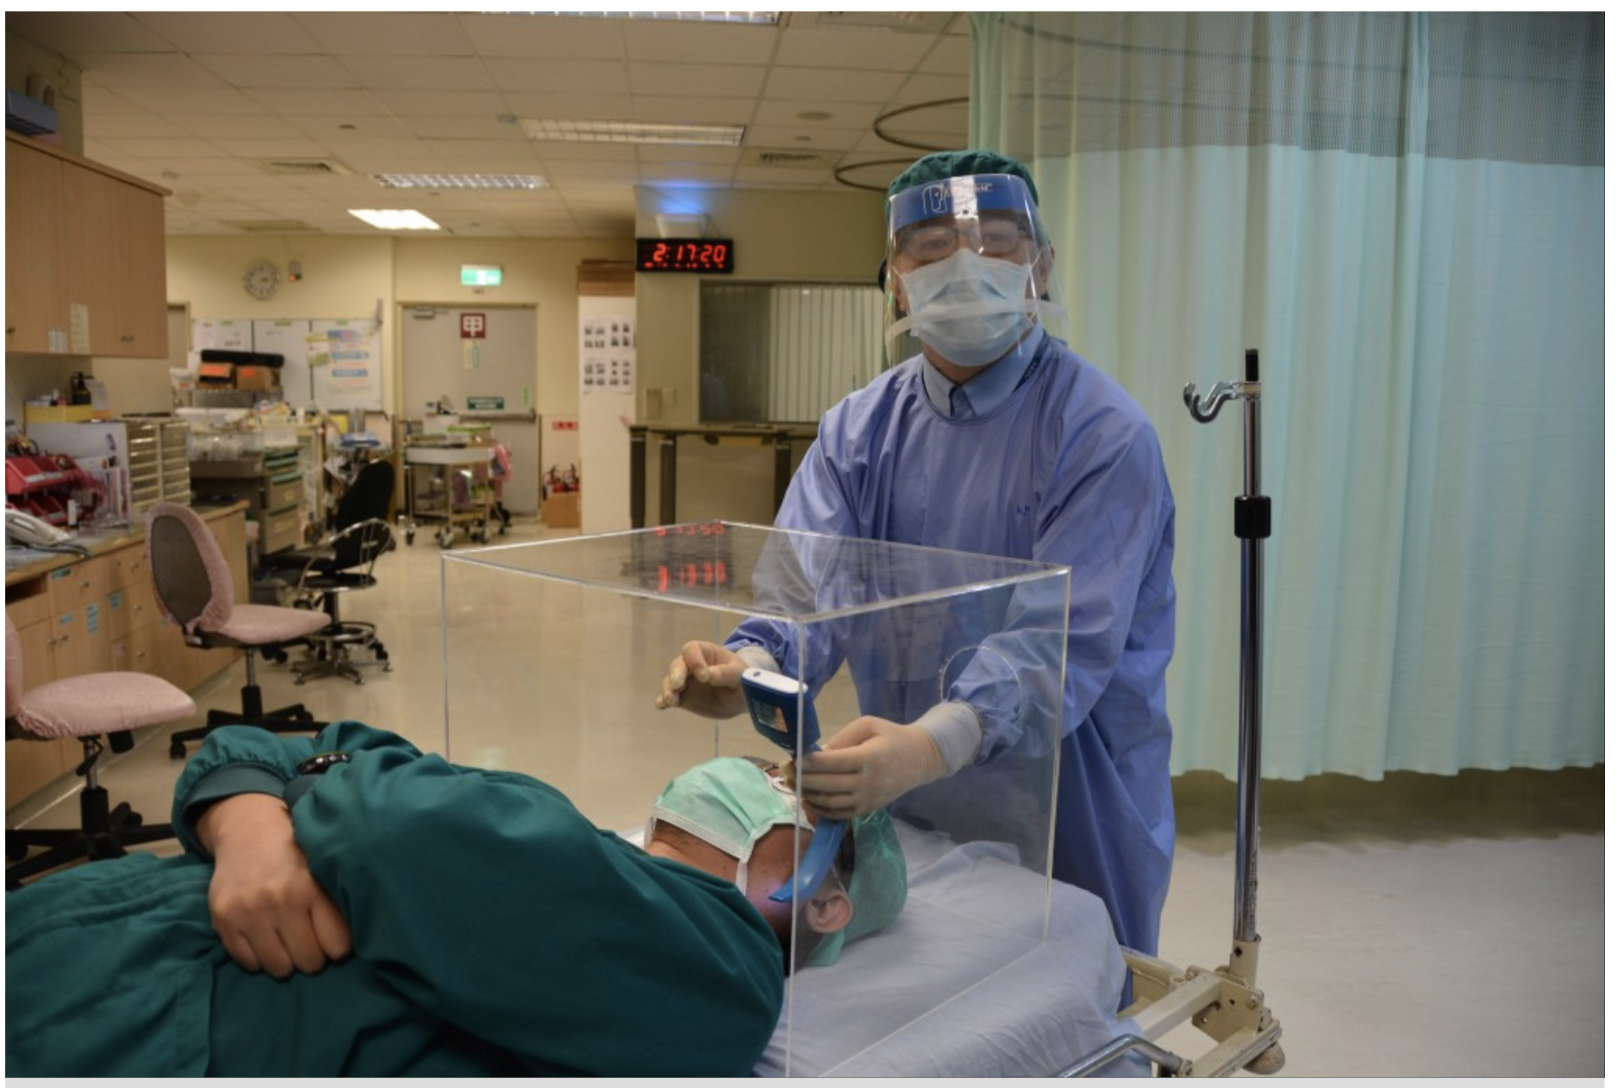 “lồng khám bệnh” của bác sĩ người Đài Loan đang giúp cho các lực lượng y tế Mỹ - ảnh: Taiwannews 